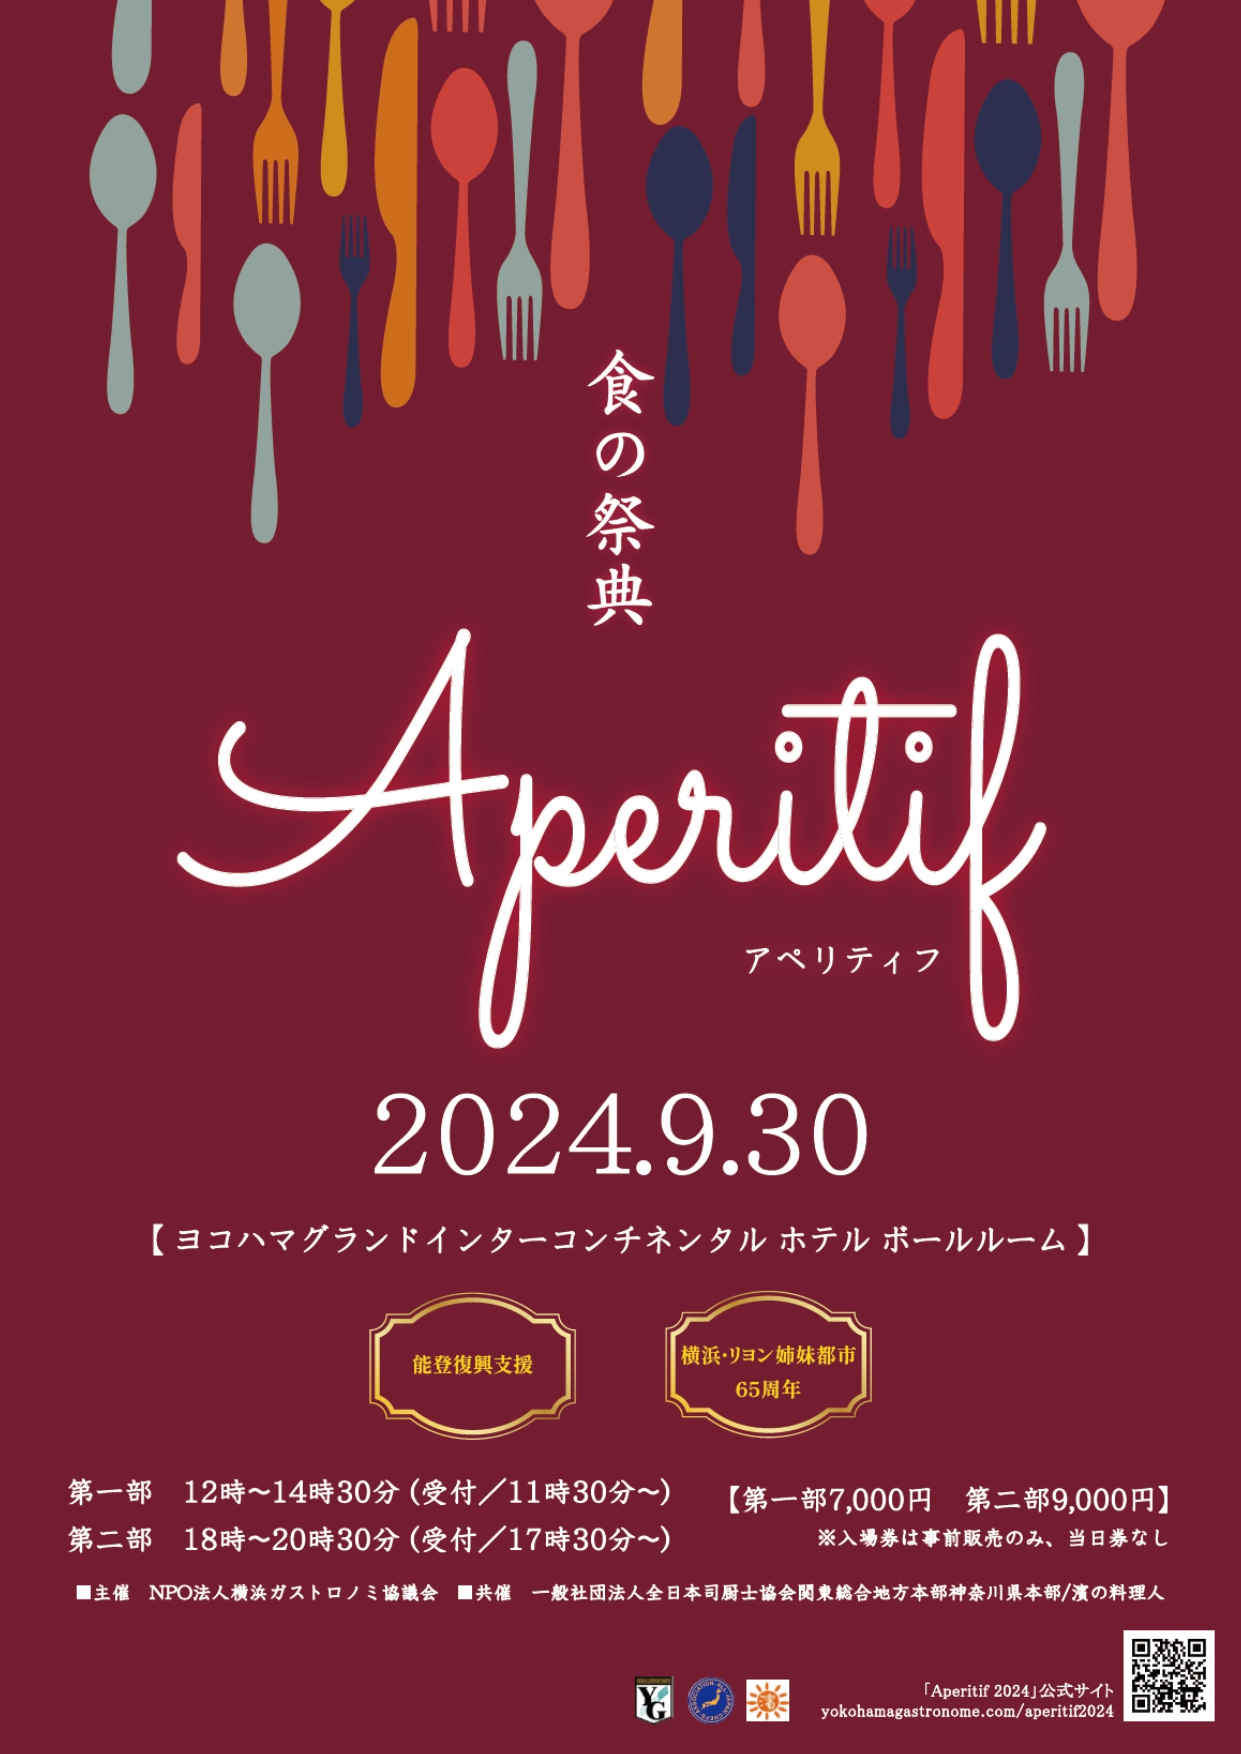 アペリティフ 2024 食の祭典 in 横濱